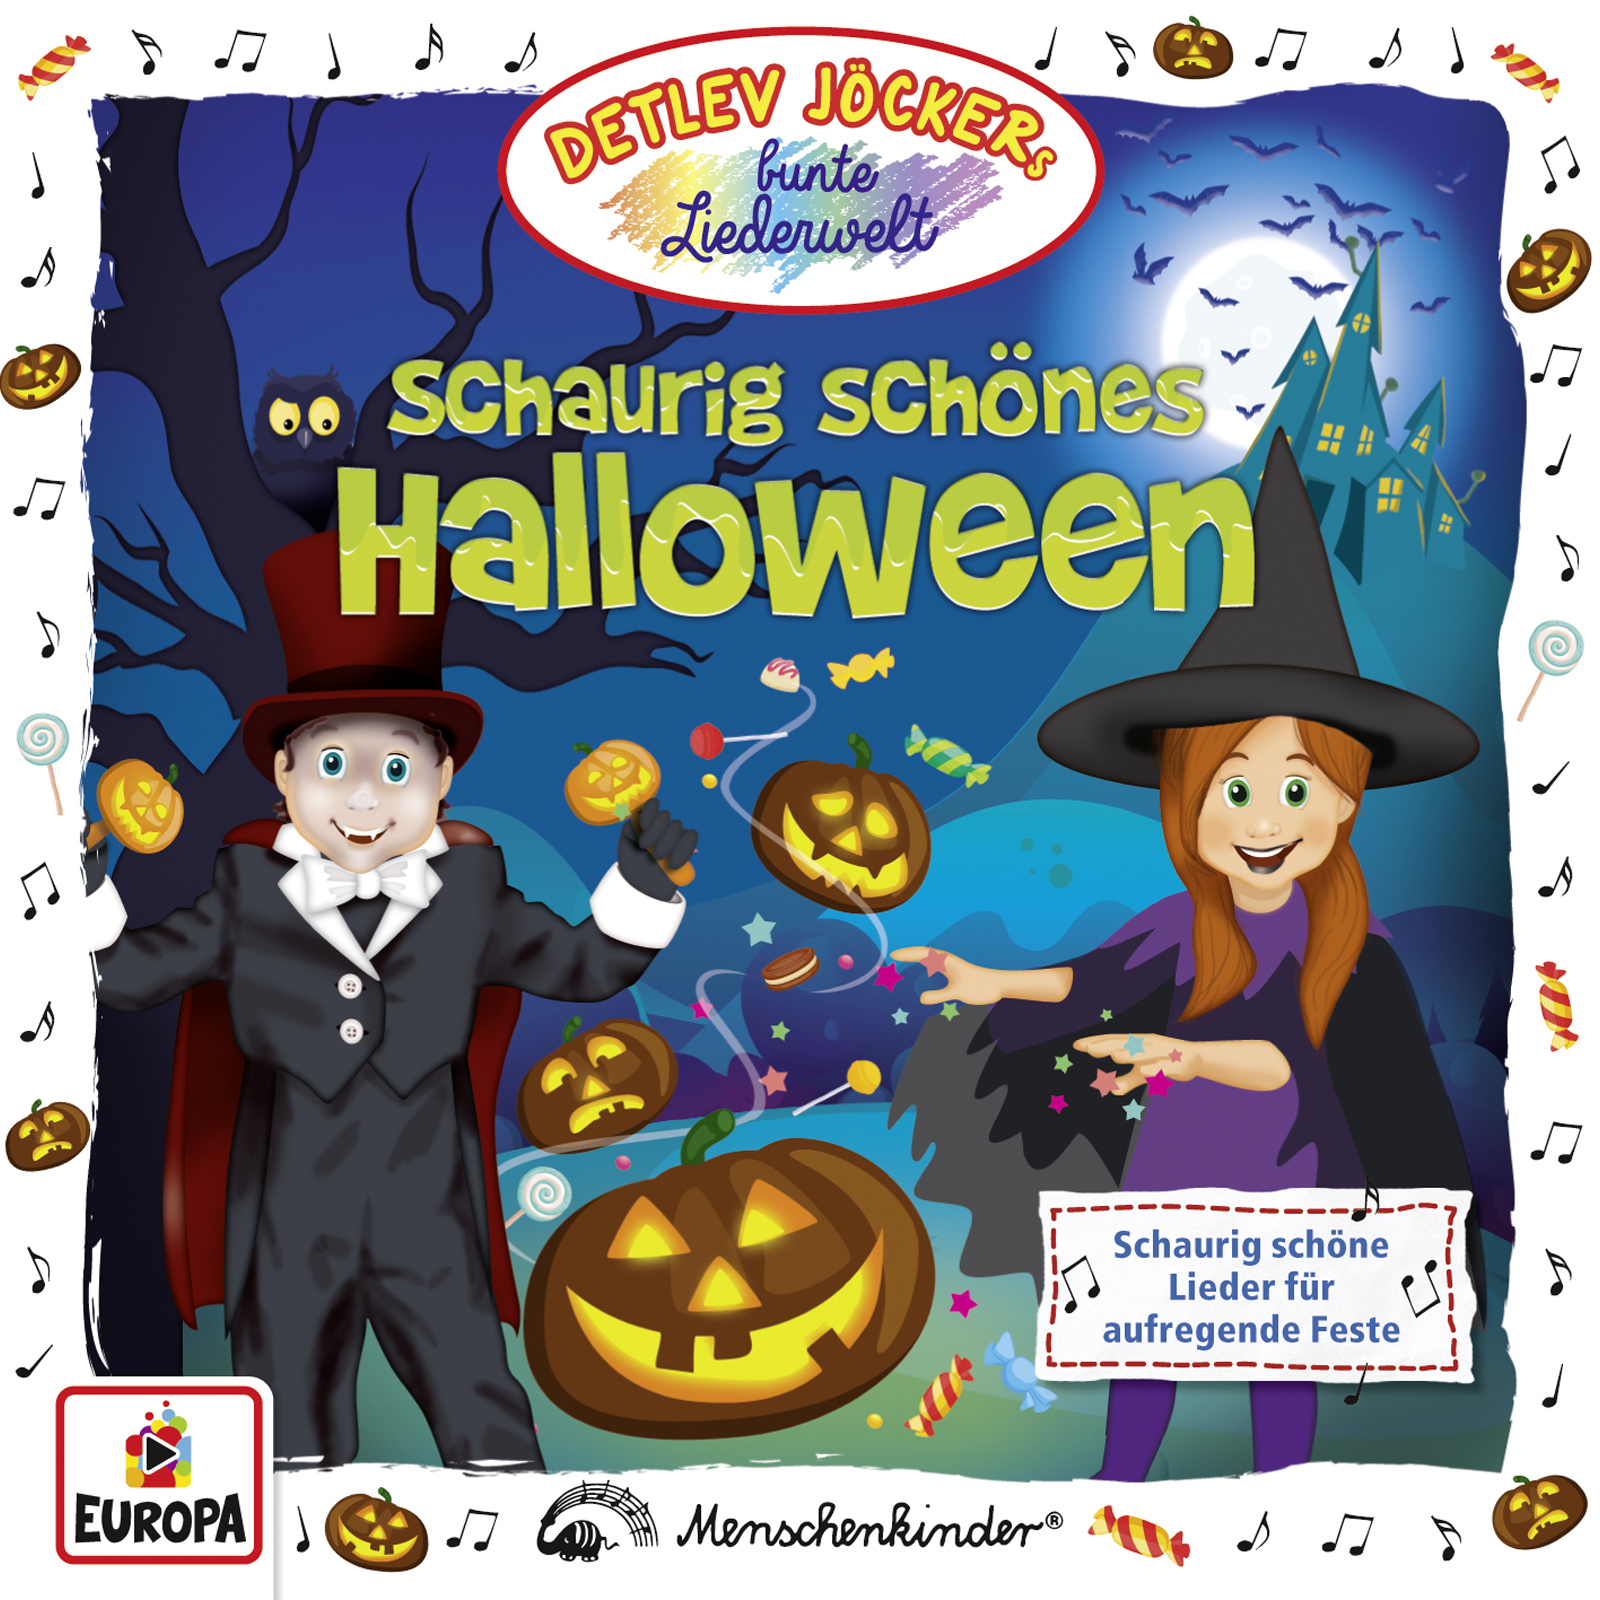 Detlev Jöcker: Schaurig-schönes Halloween